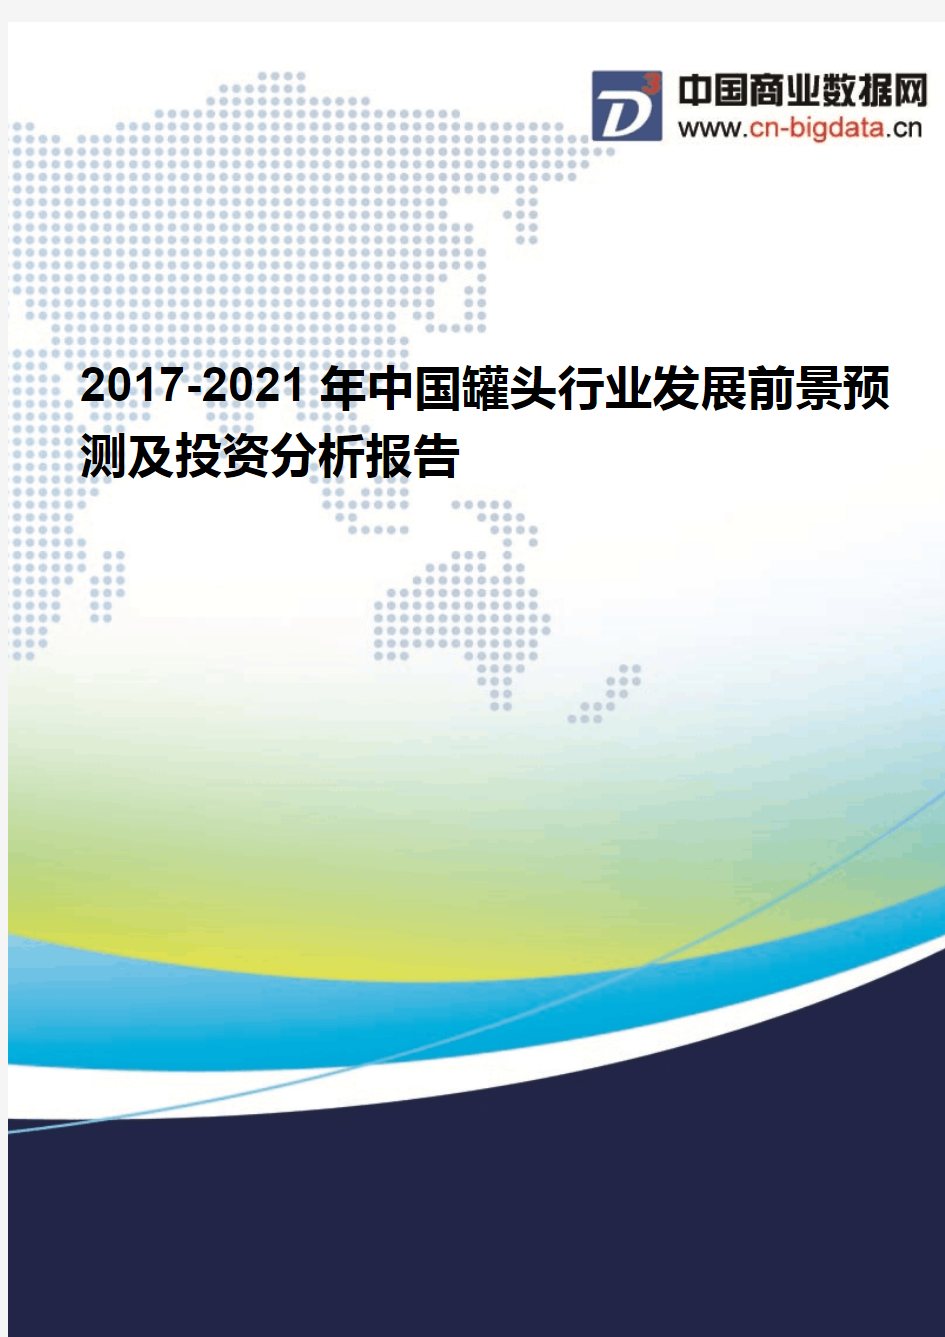 2017-2021年中国罐头行业发展前景预测及投资分析报告